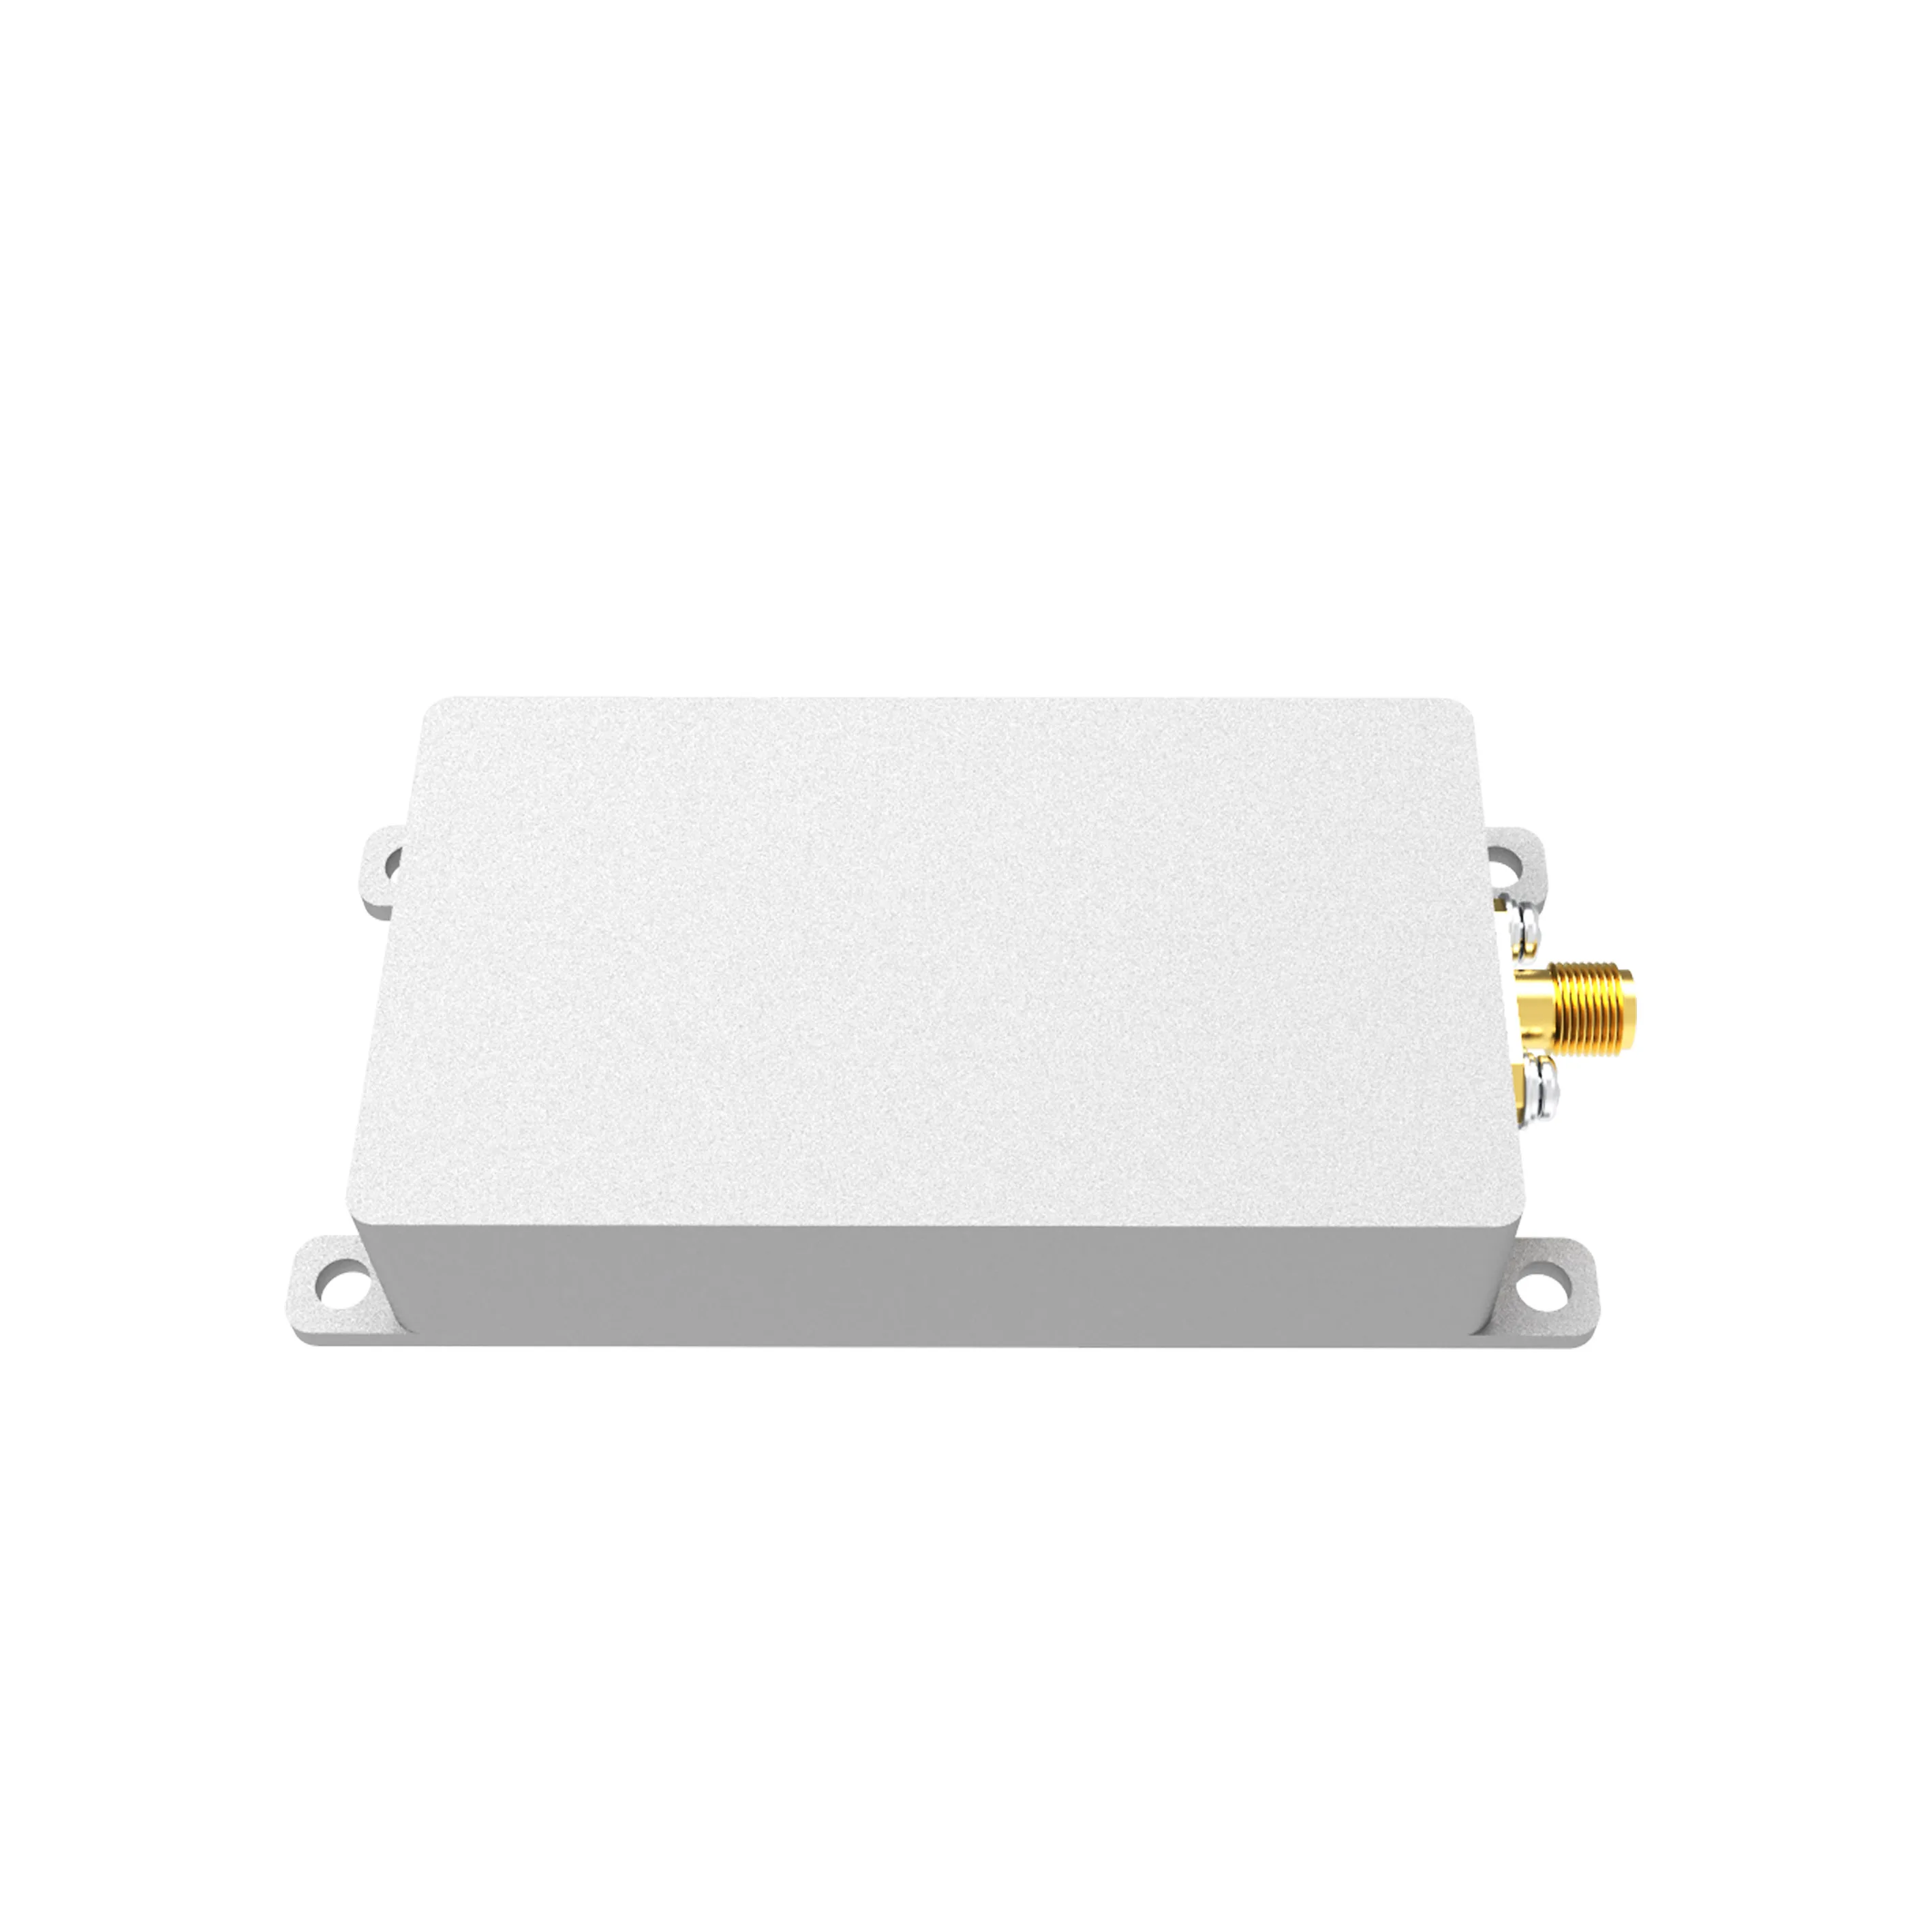 SZHUASHI-Low-Power Sweep Signal Source Shielding Module,Customizable Series, 3.5GHz, 5W, 37dBm, YJM3505B, 100% New